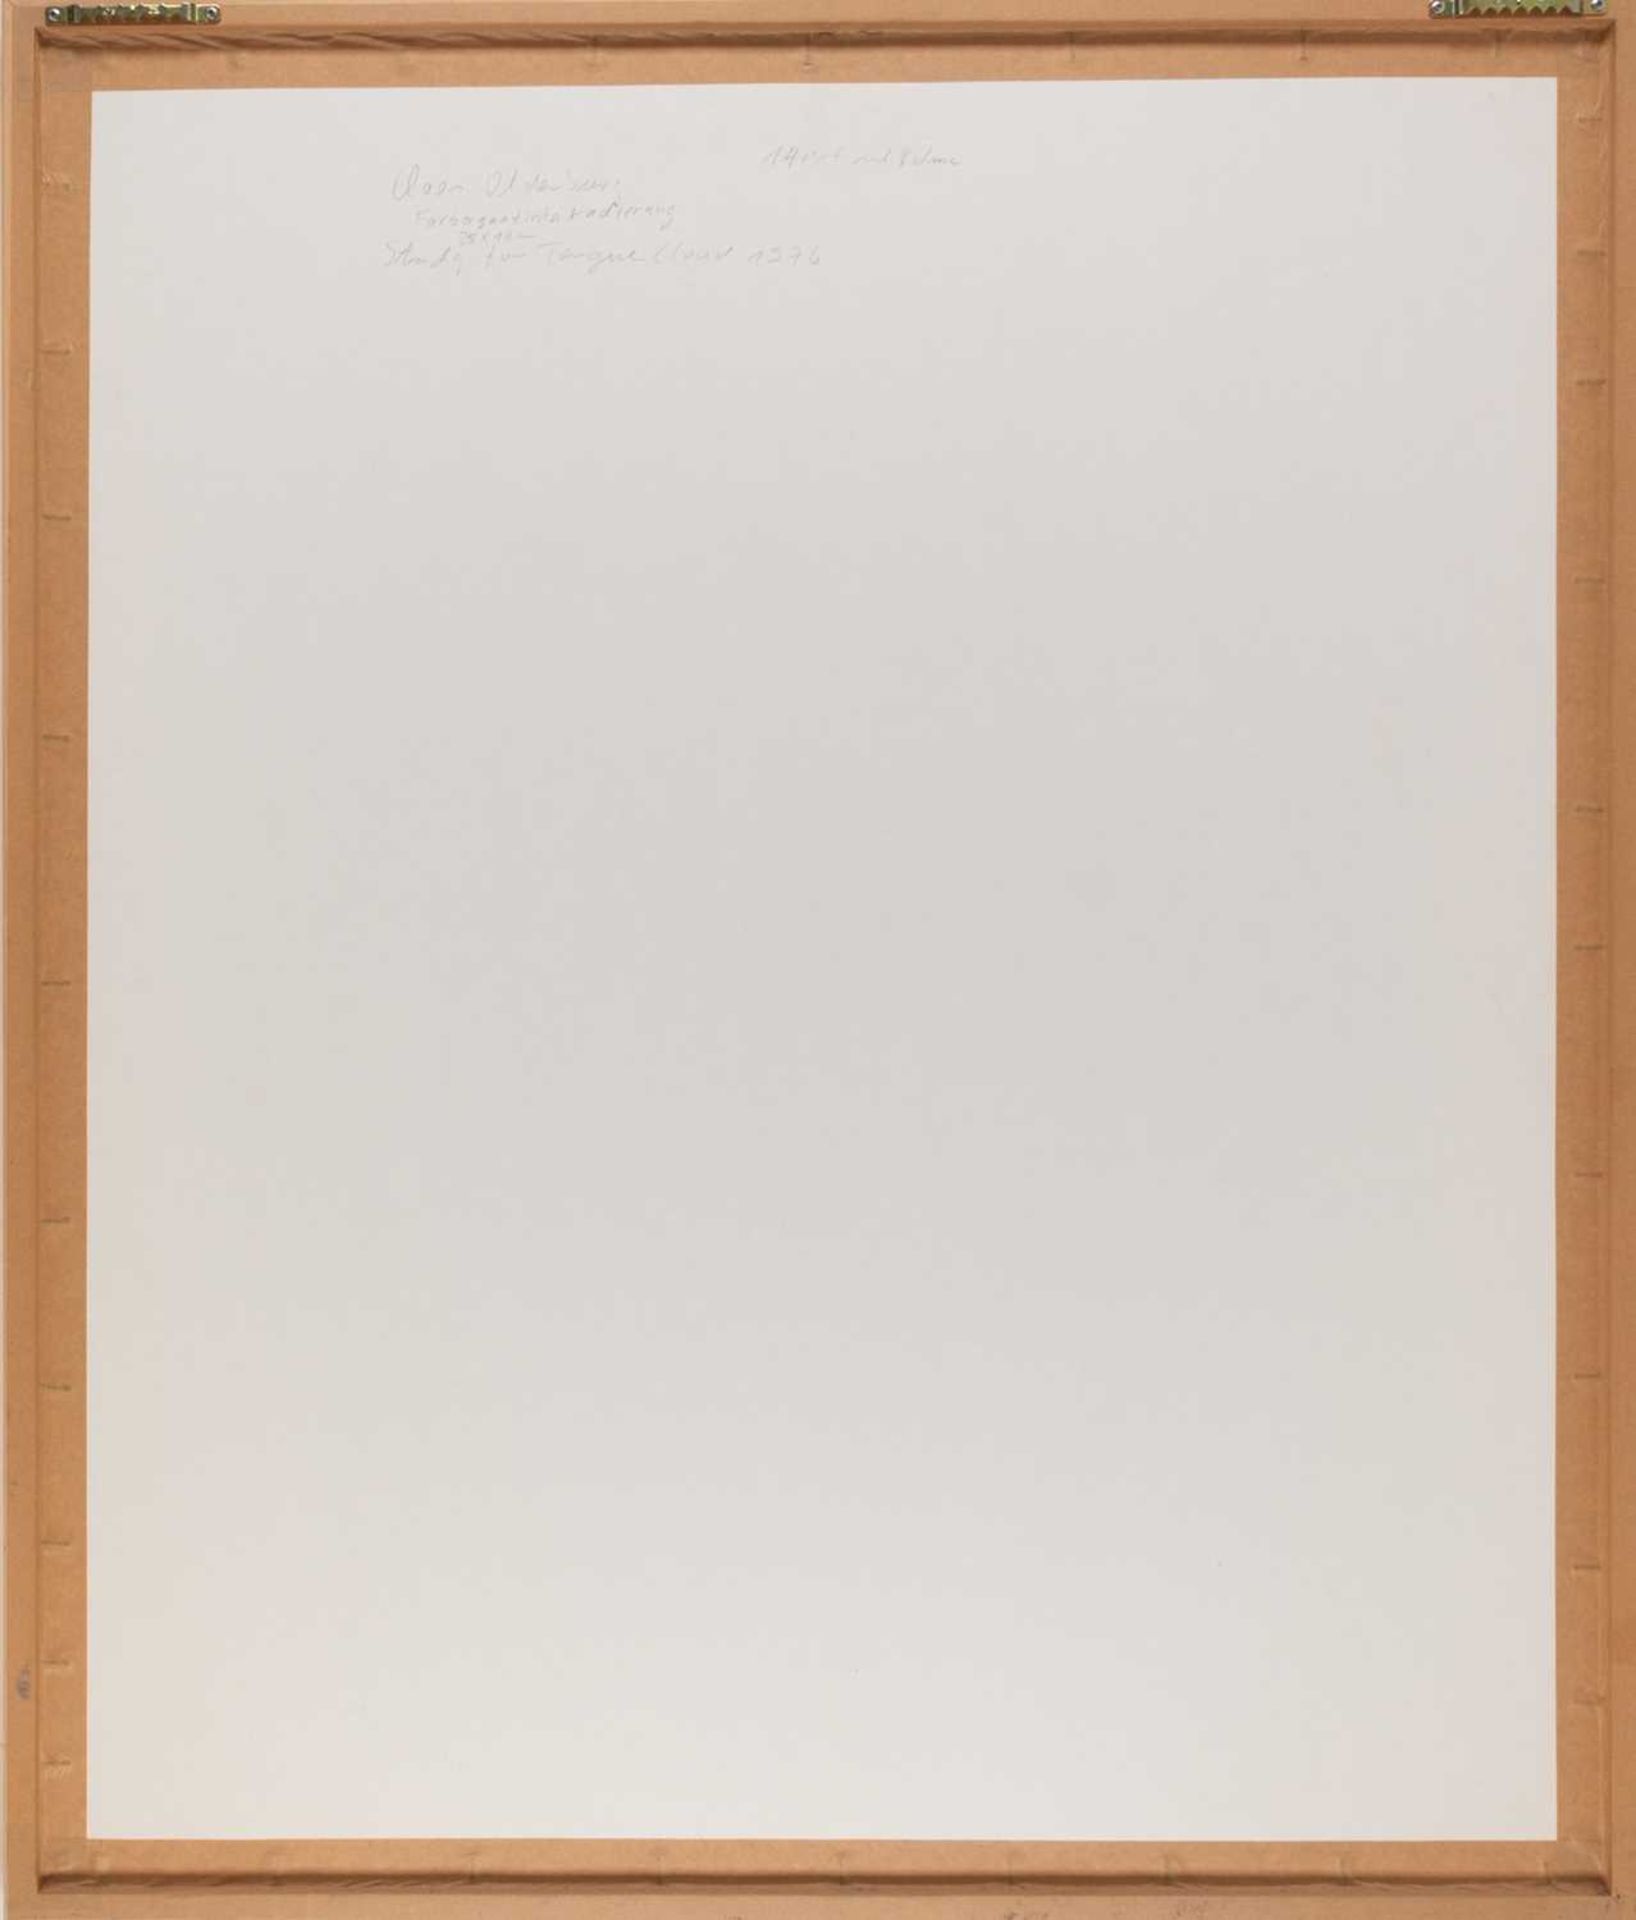 Claes Oldenburg (1929 Stockholm - New York 2022) - Image 3 of 3